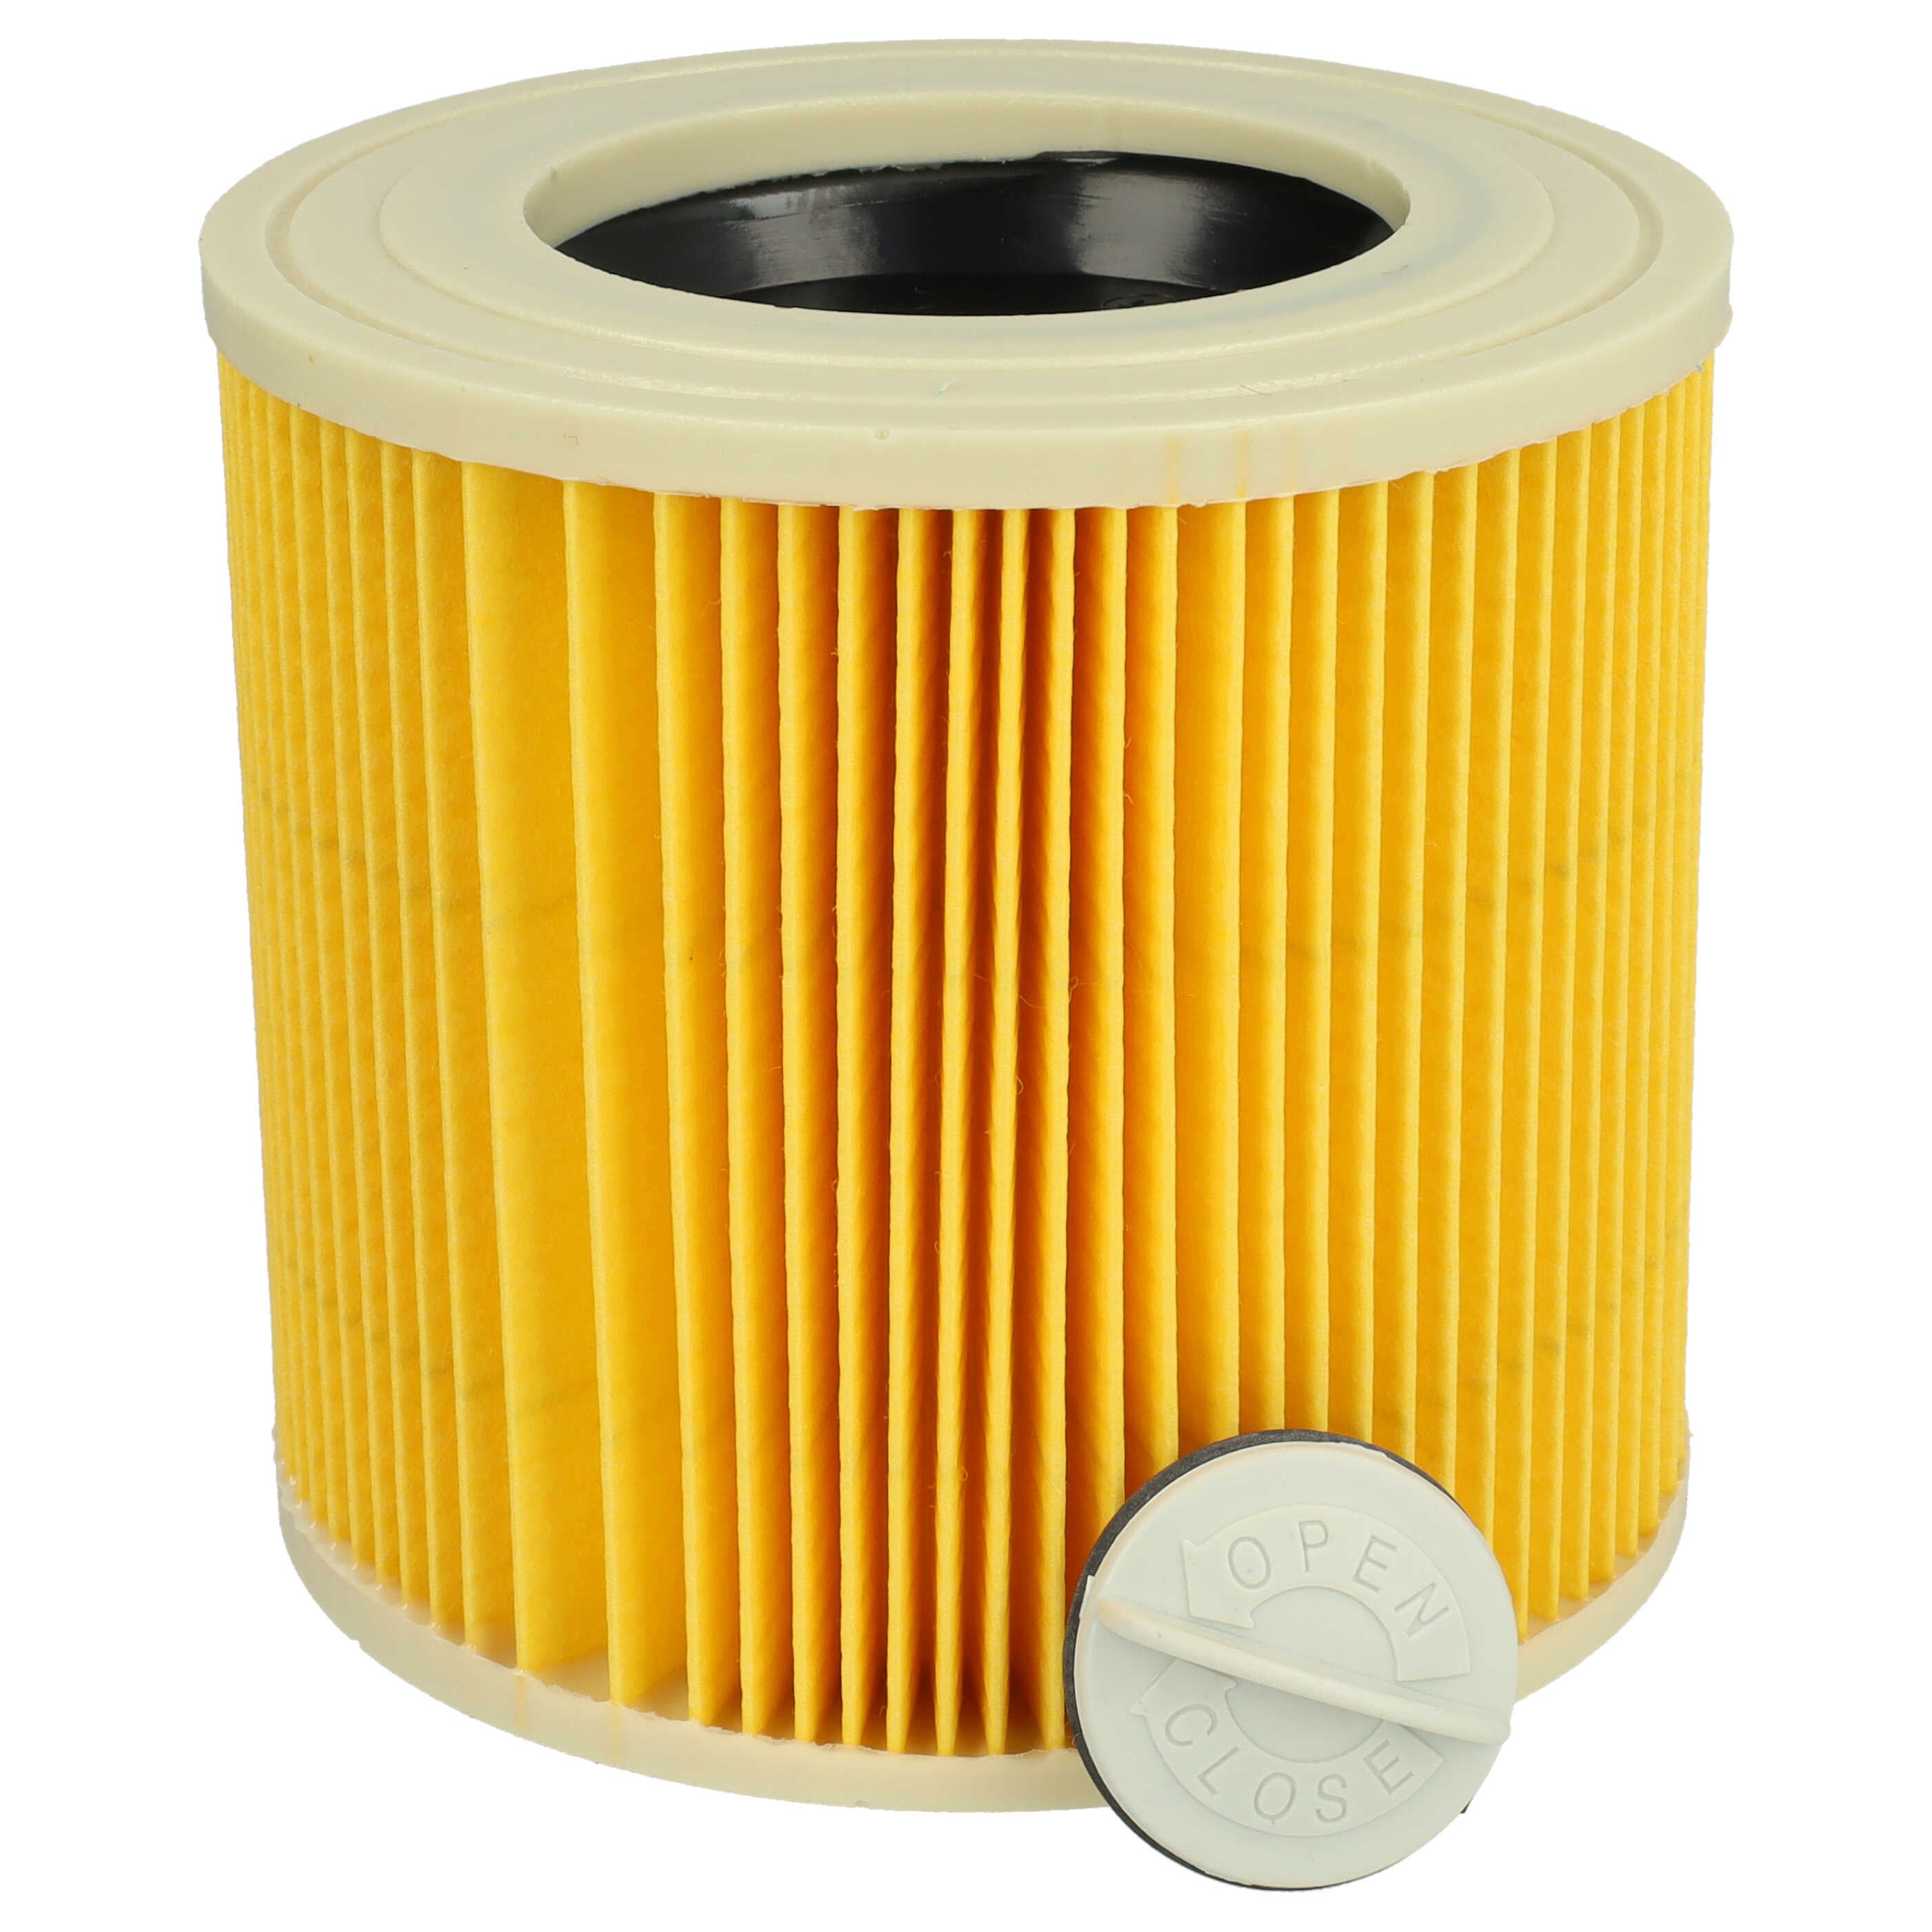 2x filtre à cartouches pour aspirateur compatible avec Kärcher WD